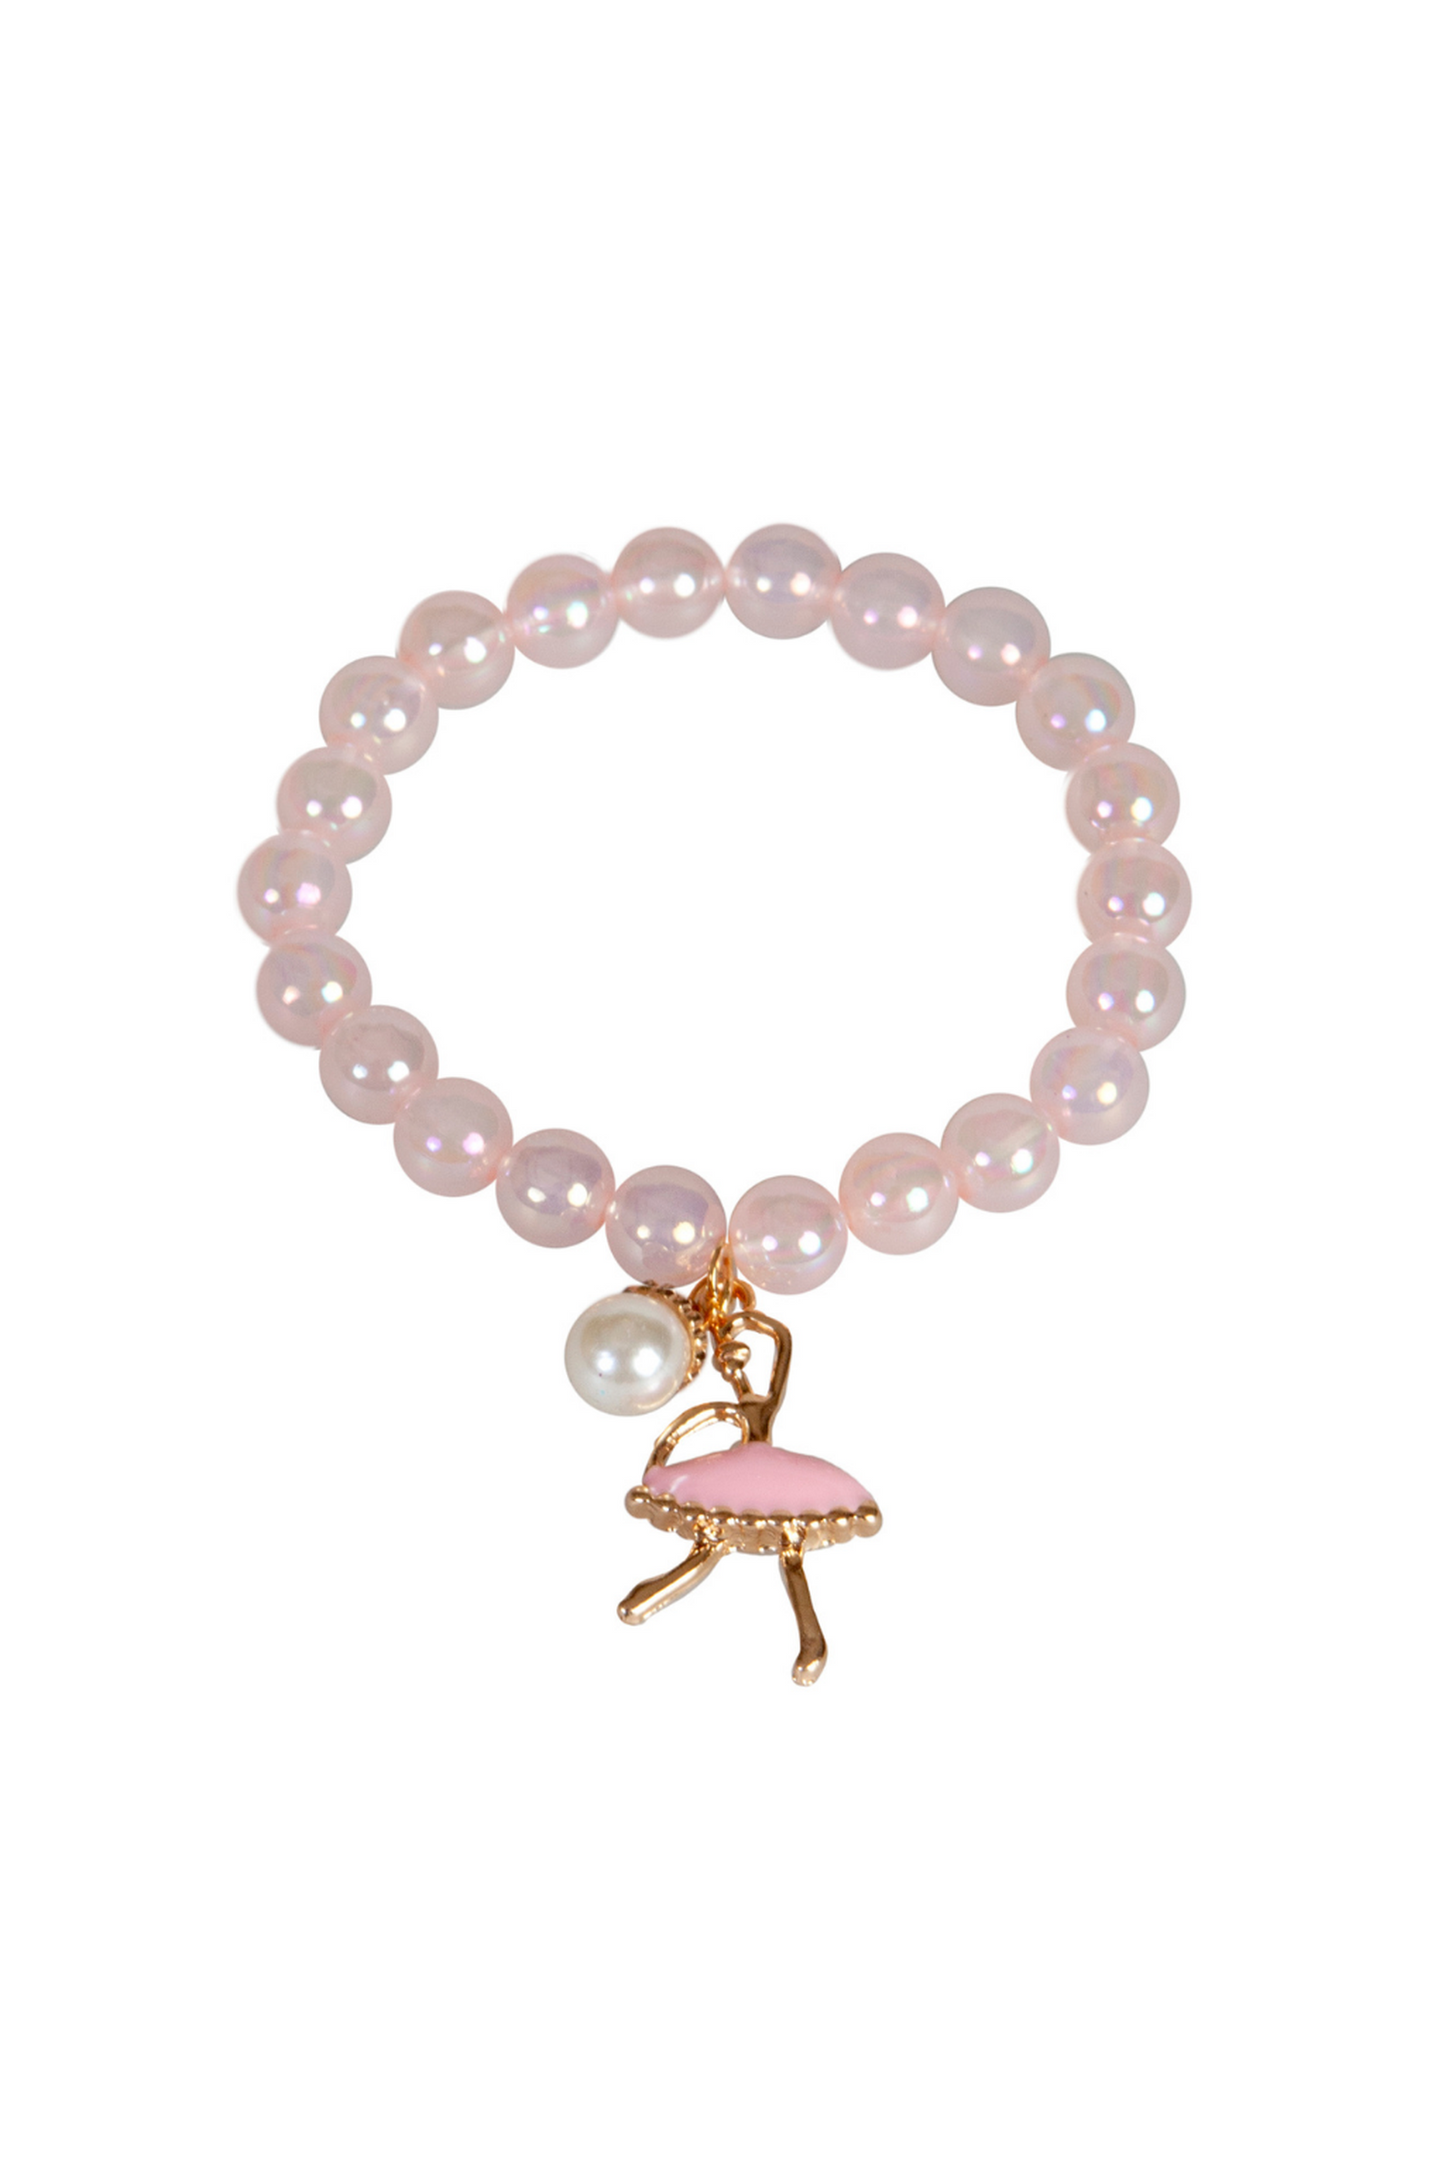 the ballet beauty bracelet on a white background